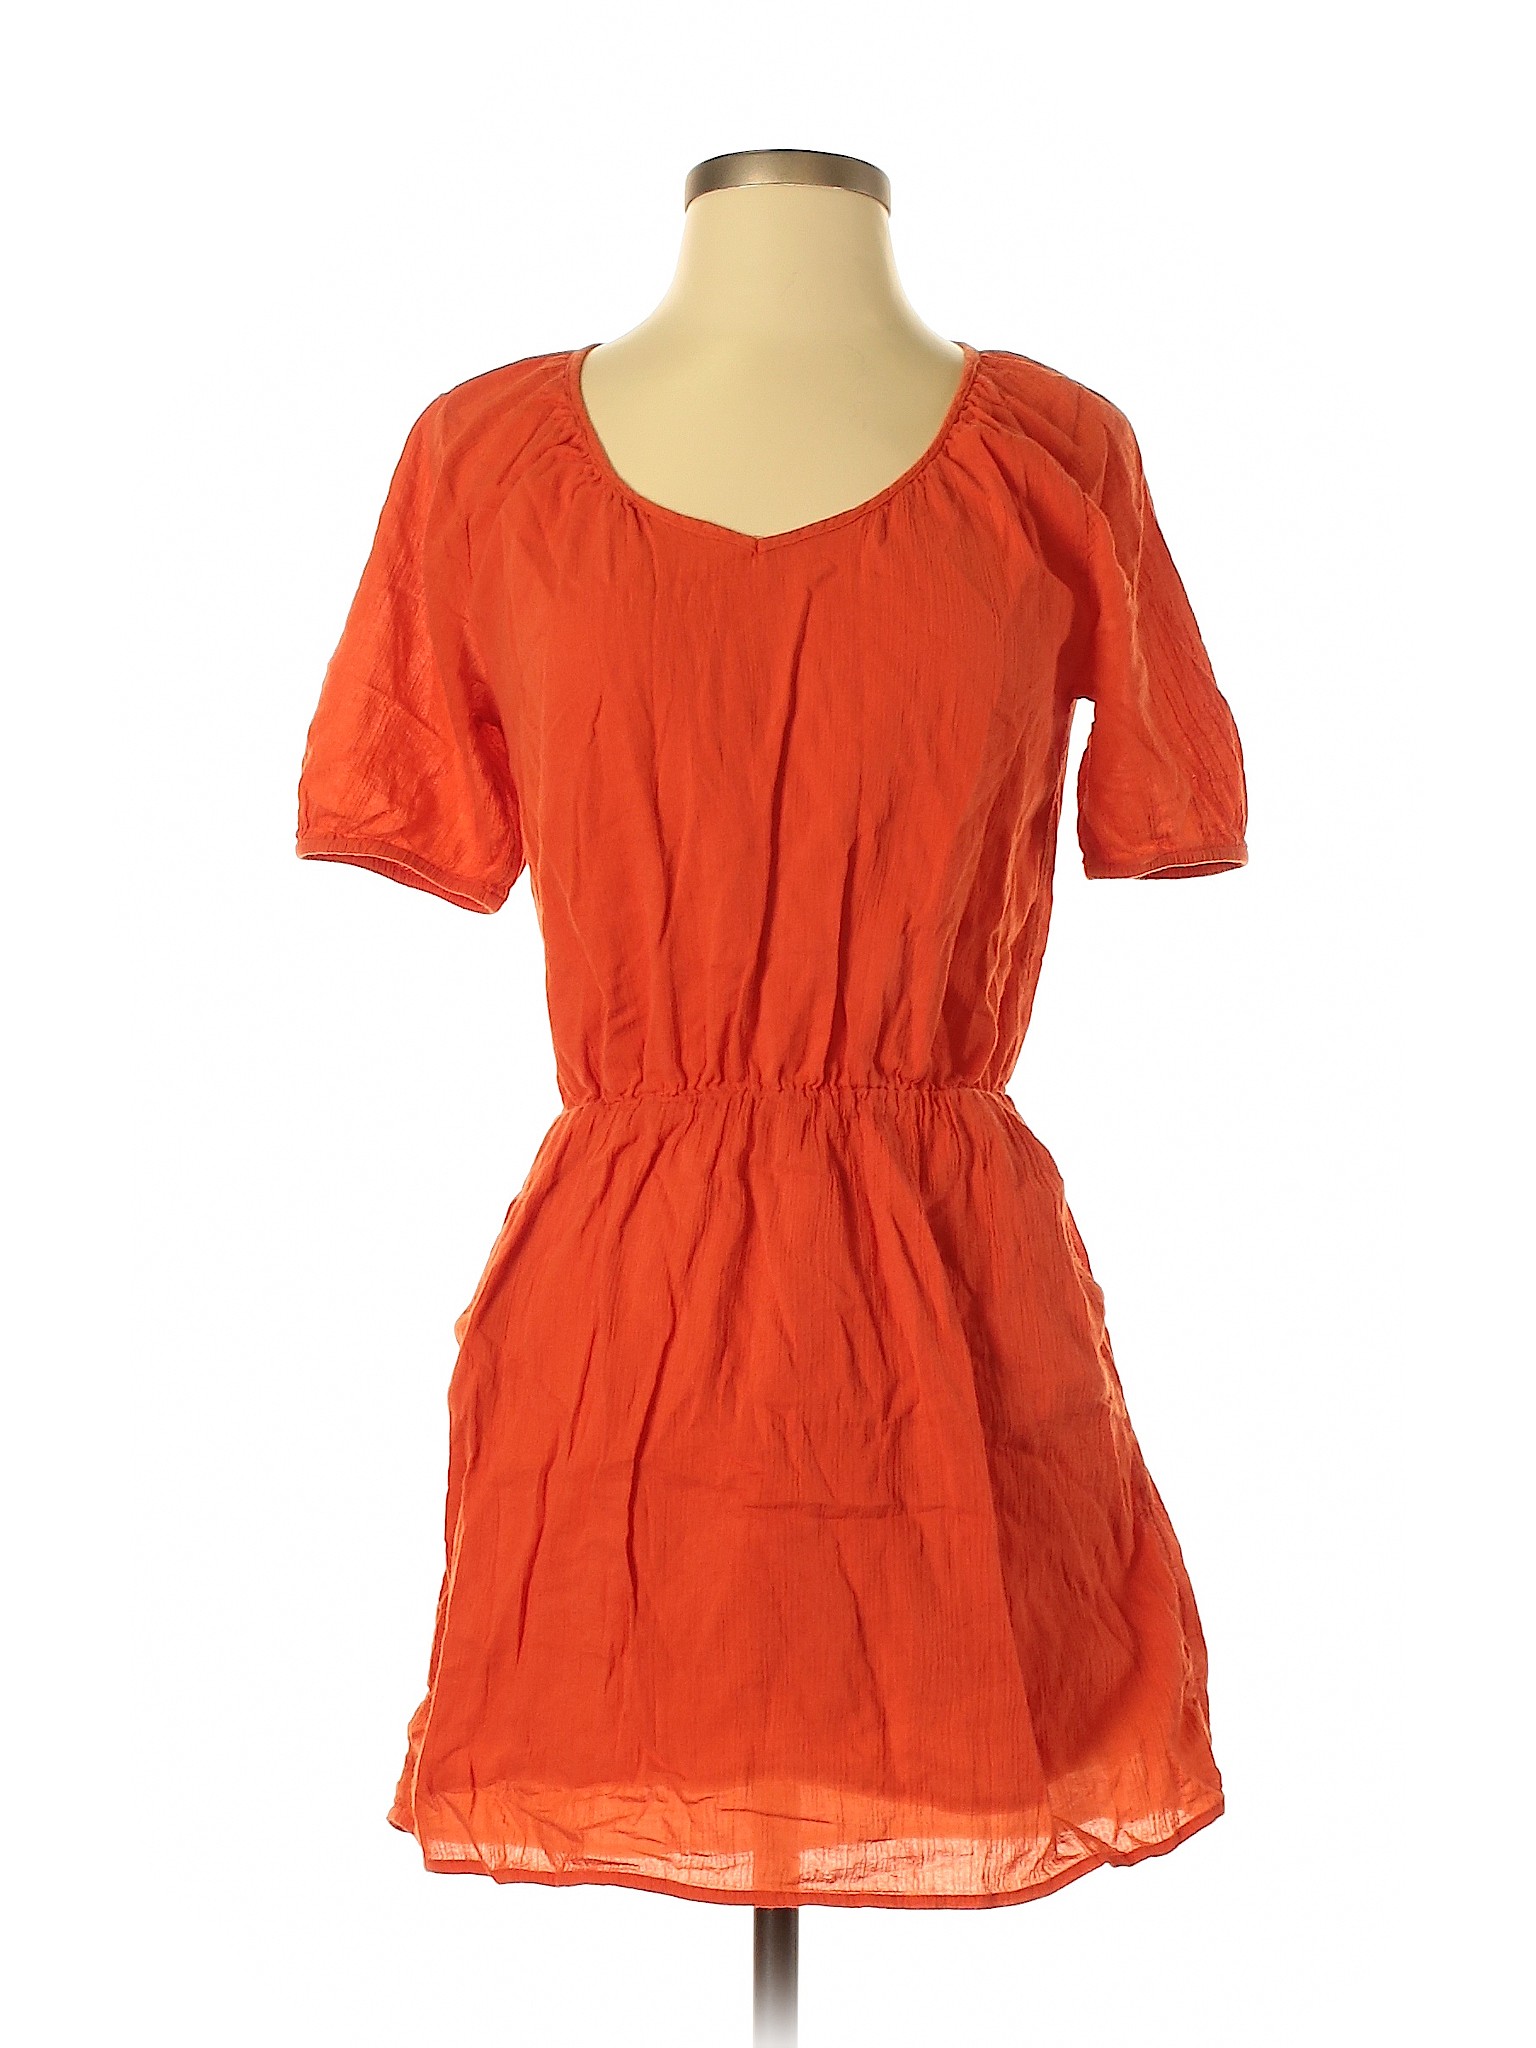 Gap Outlet Women Orange Casual Dress XS | eBay